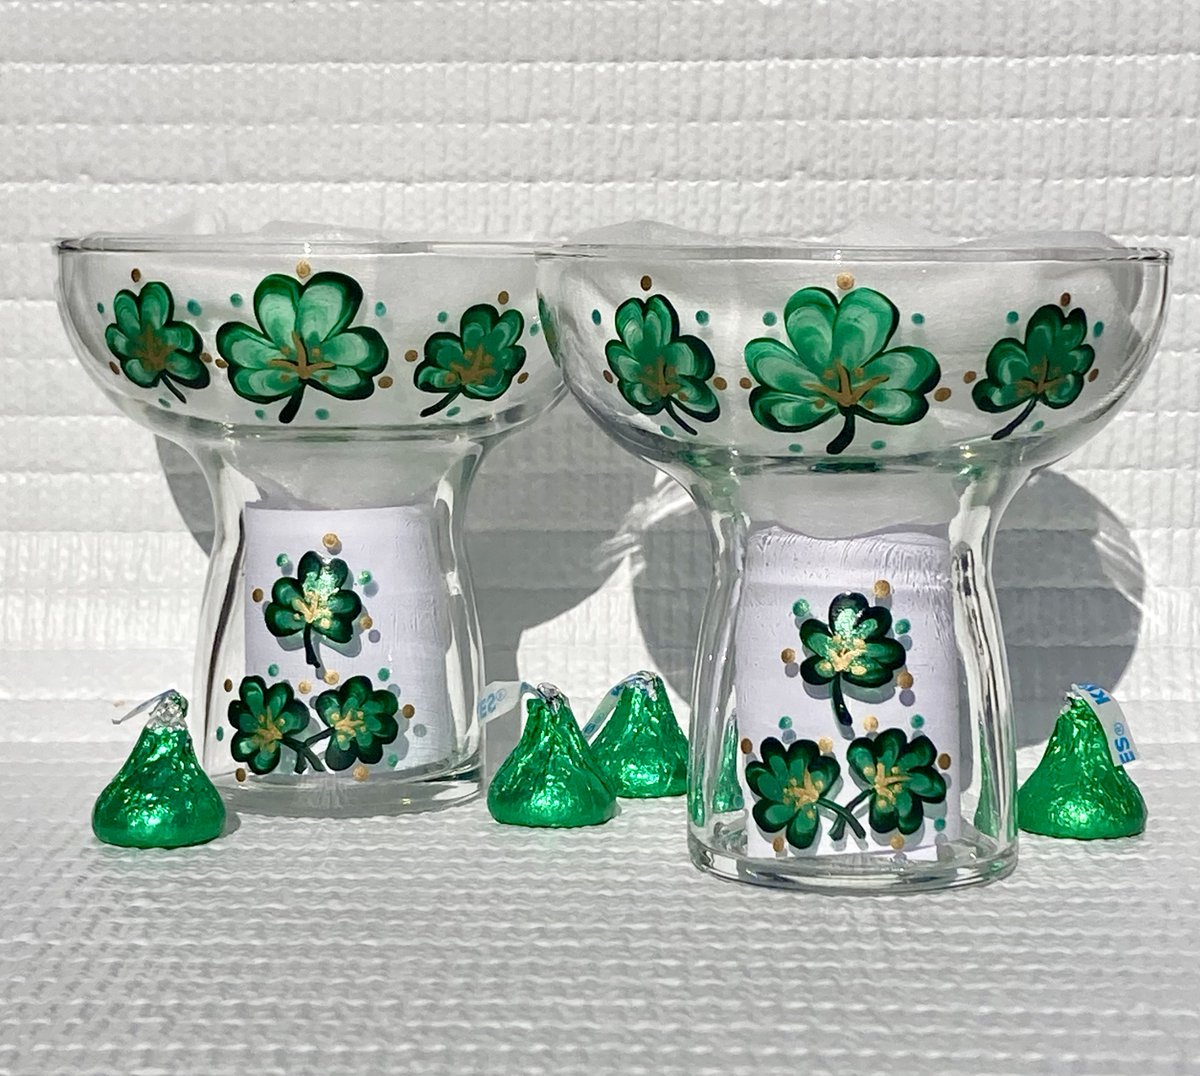 Irish mothers Day gift etsy.com/listing/165360… #shamrockglasses #irishgifts #MothersDay #SMILEtt23 #CraftBizParty #etsy #shopsmall #margaritaglasses